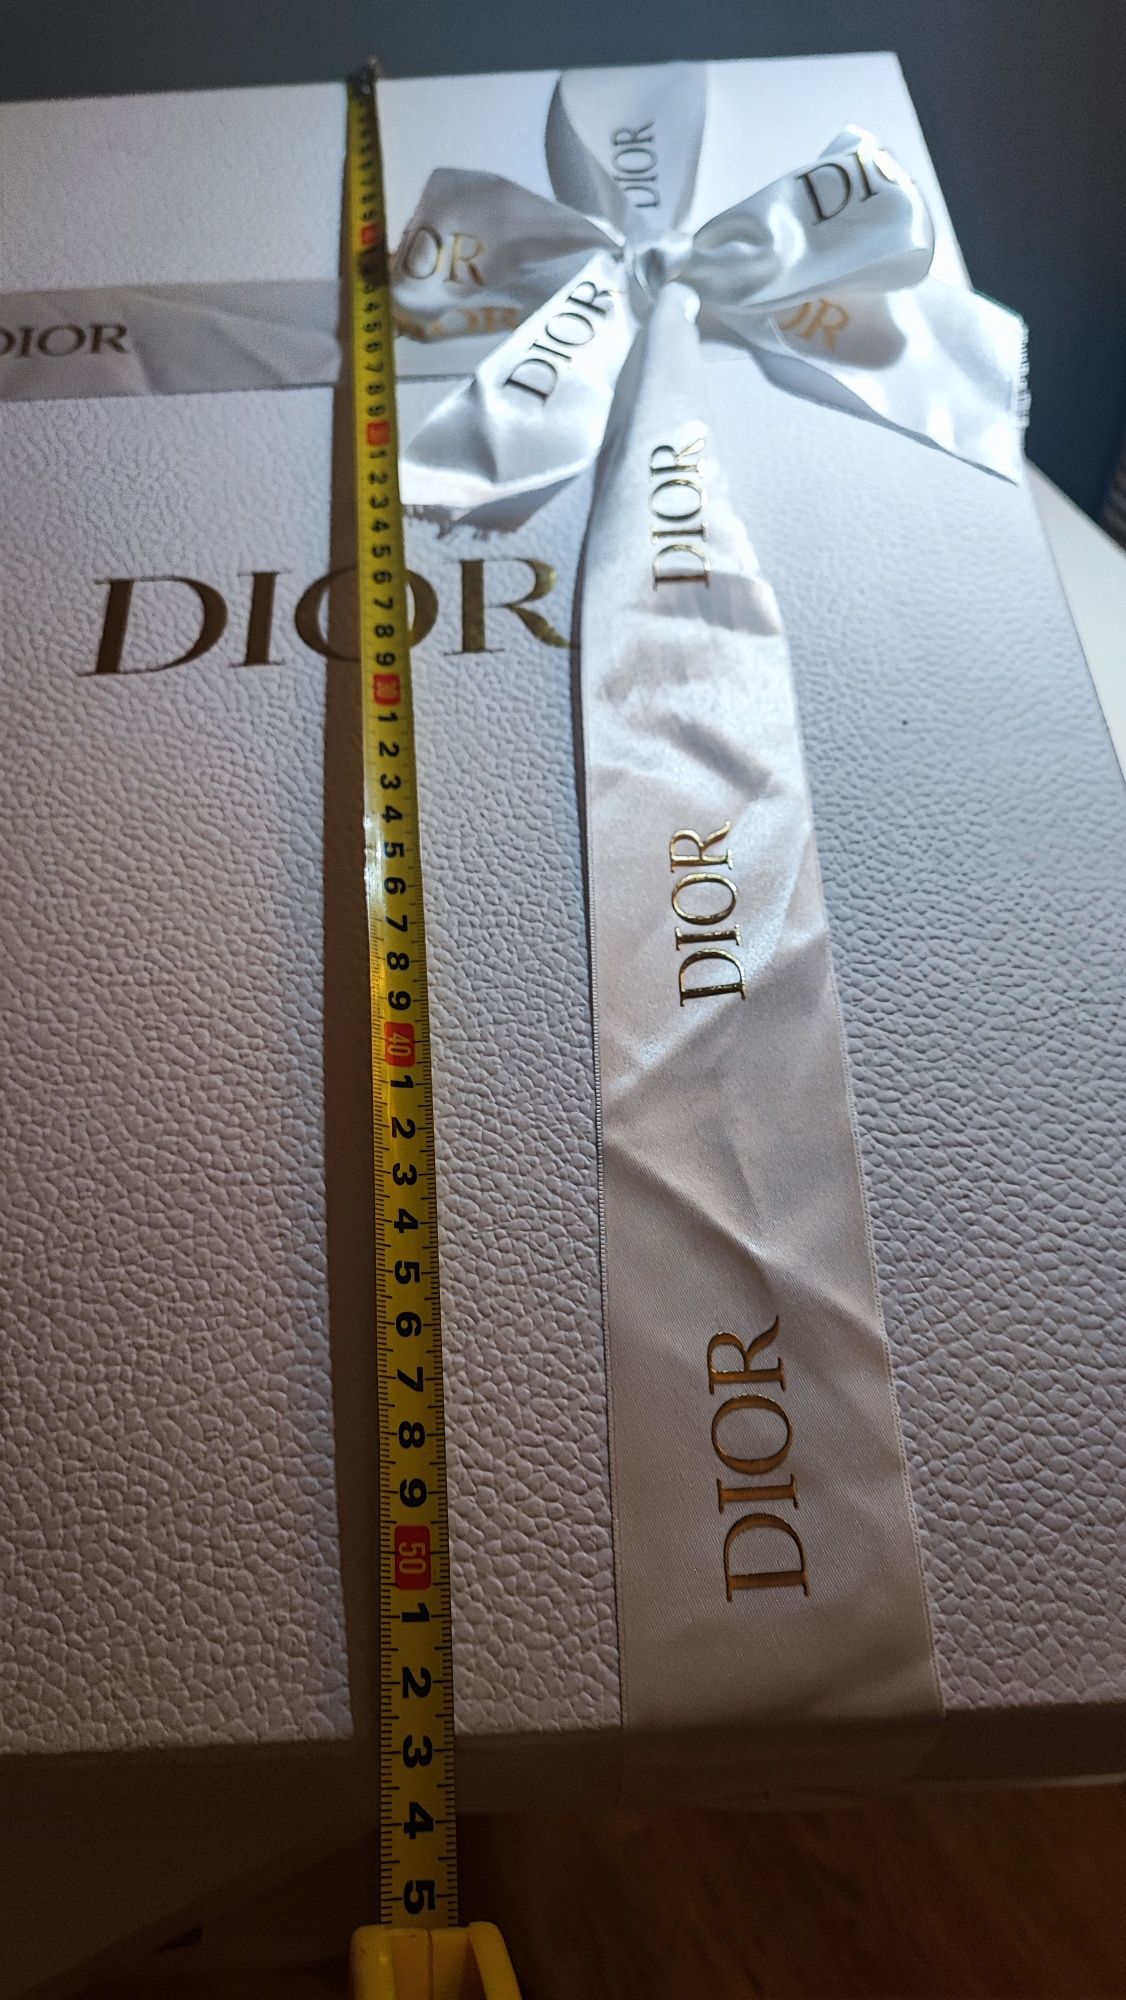 Pudełko prezent karton Dior duży biały ze wstążką